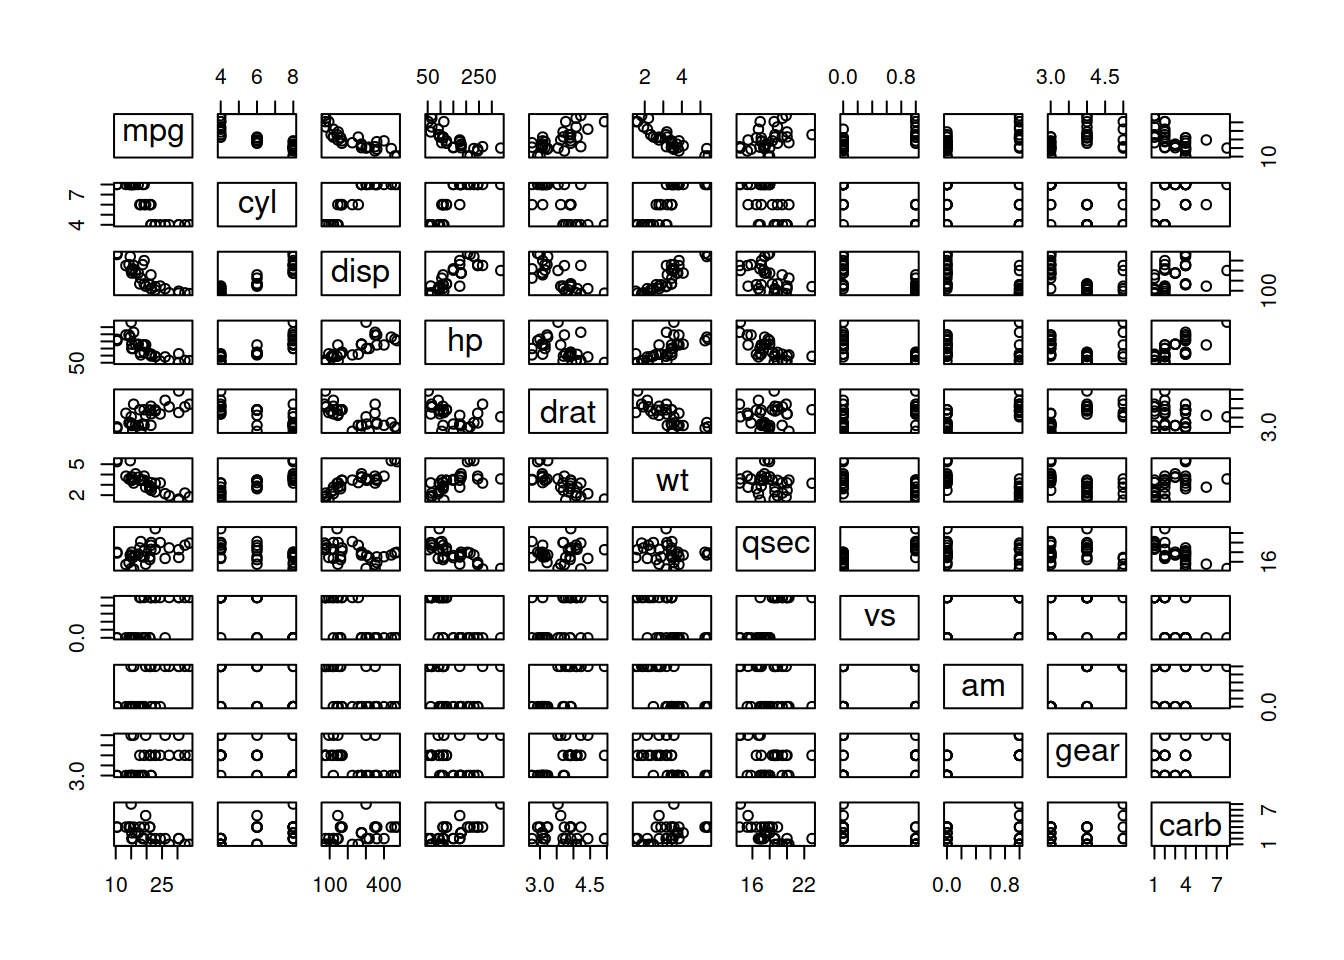 Scatterplot matrix for the mtcars dataset.